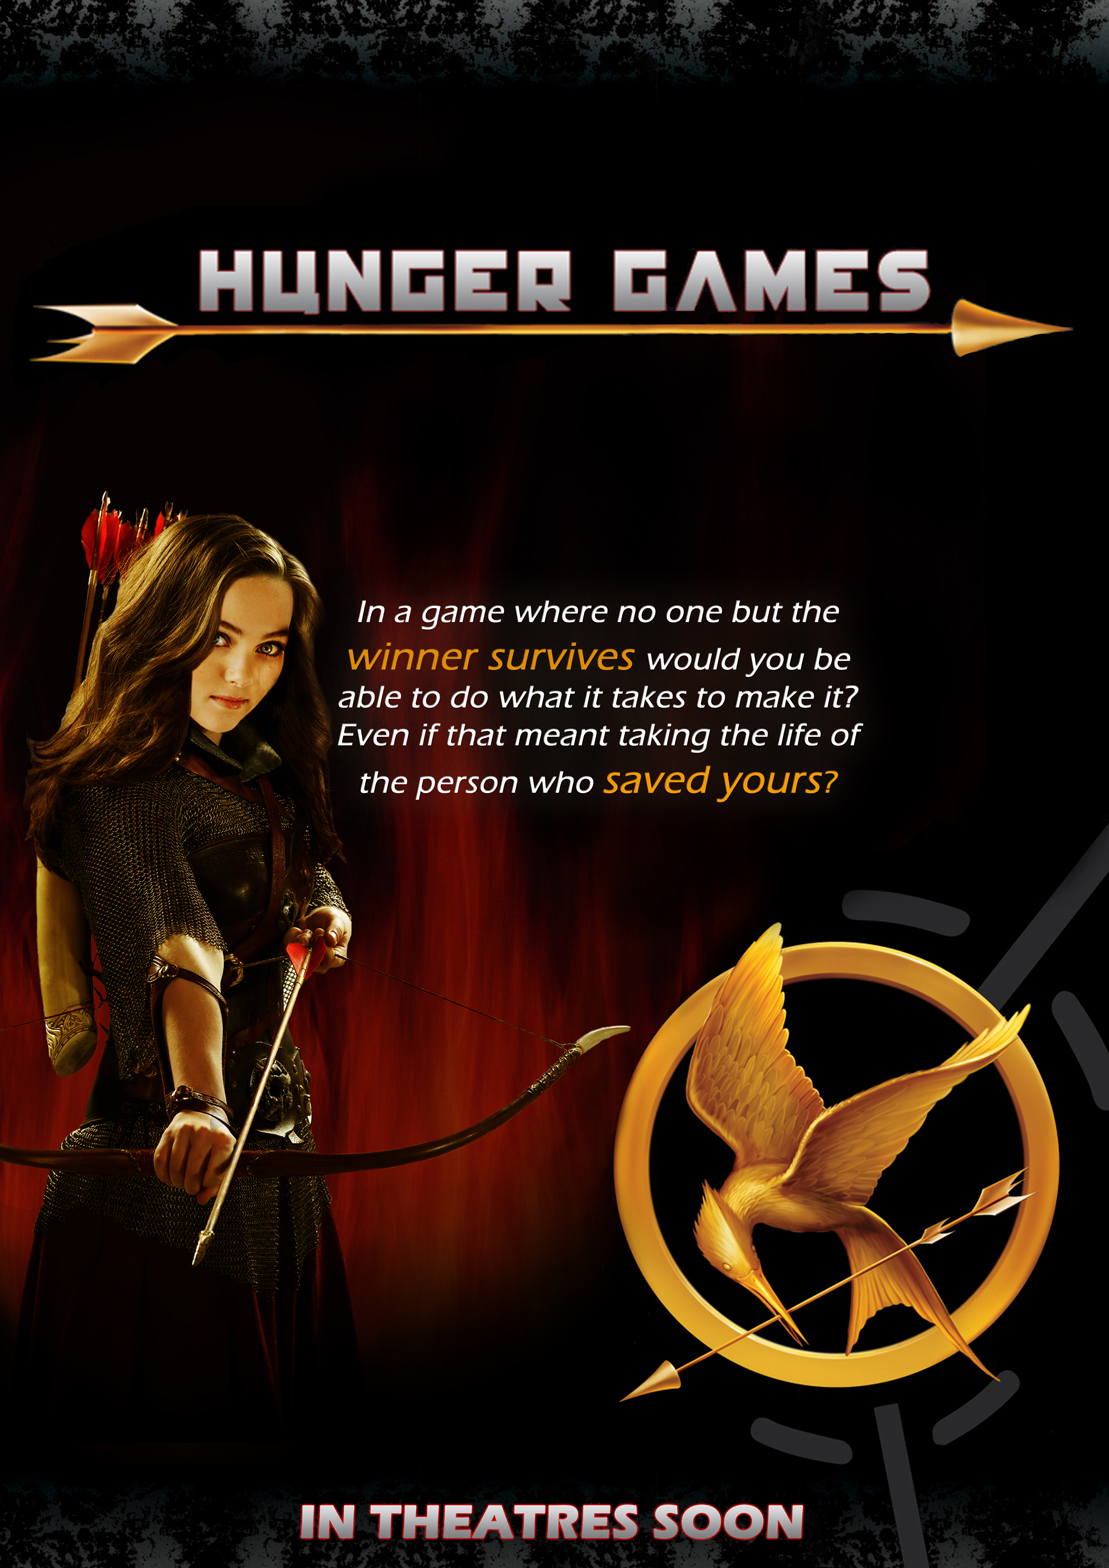 http://4.bp.blogspot.com/-2xLWowwfT4c/TwHXwMqwUhI/AAAAAAAAJPc/qtnRl0rpdck/s1600/The+Hunger+Games+Movie+Poster.jpg